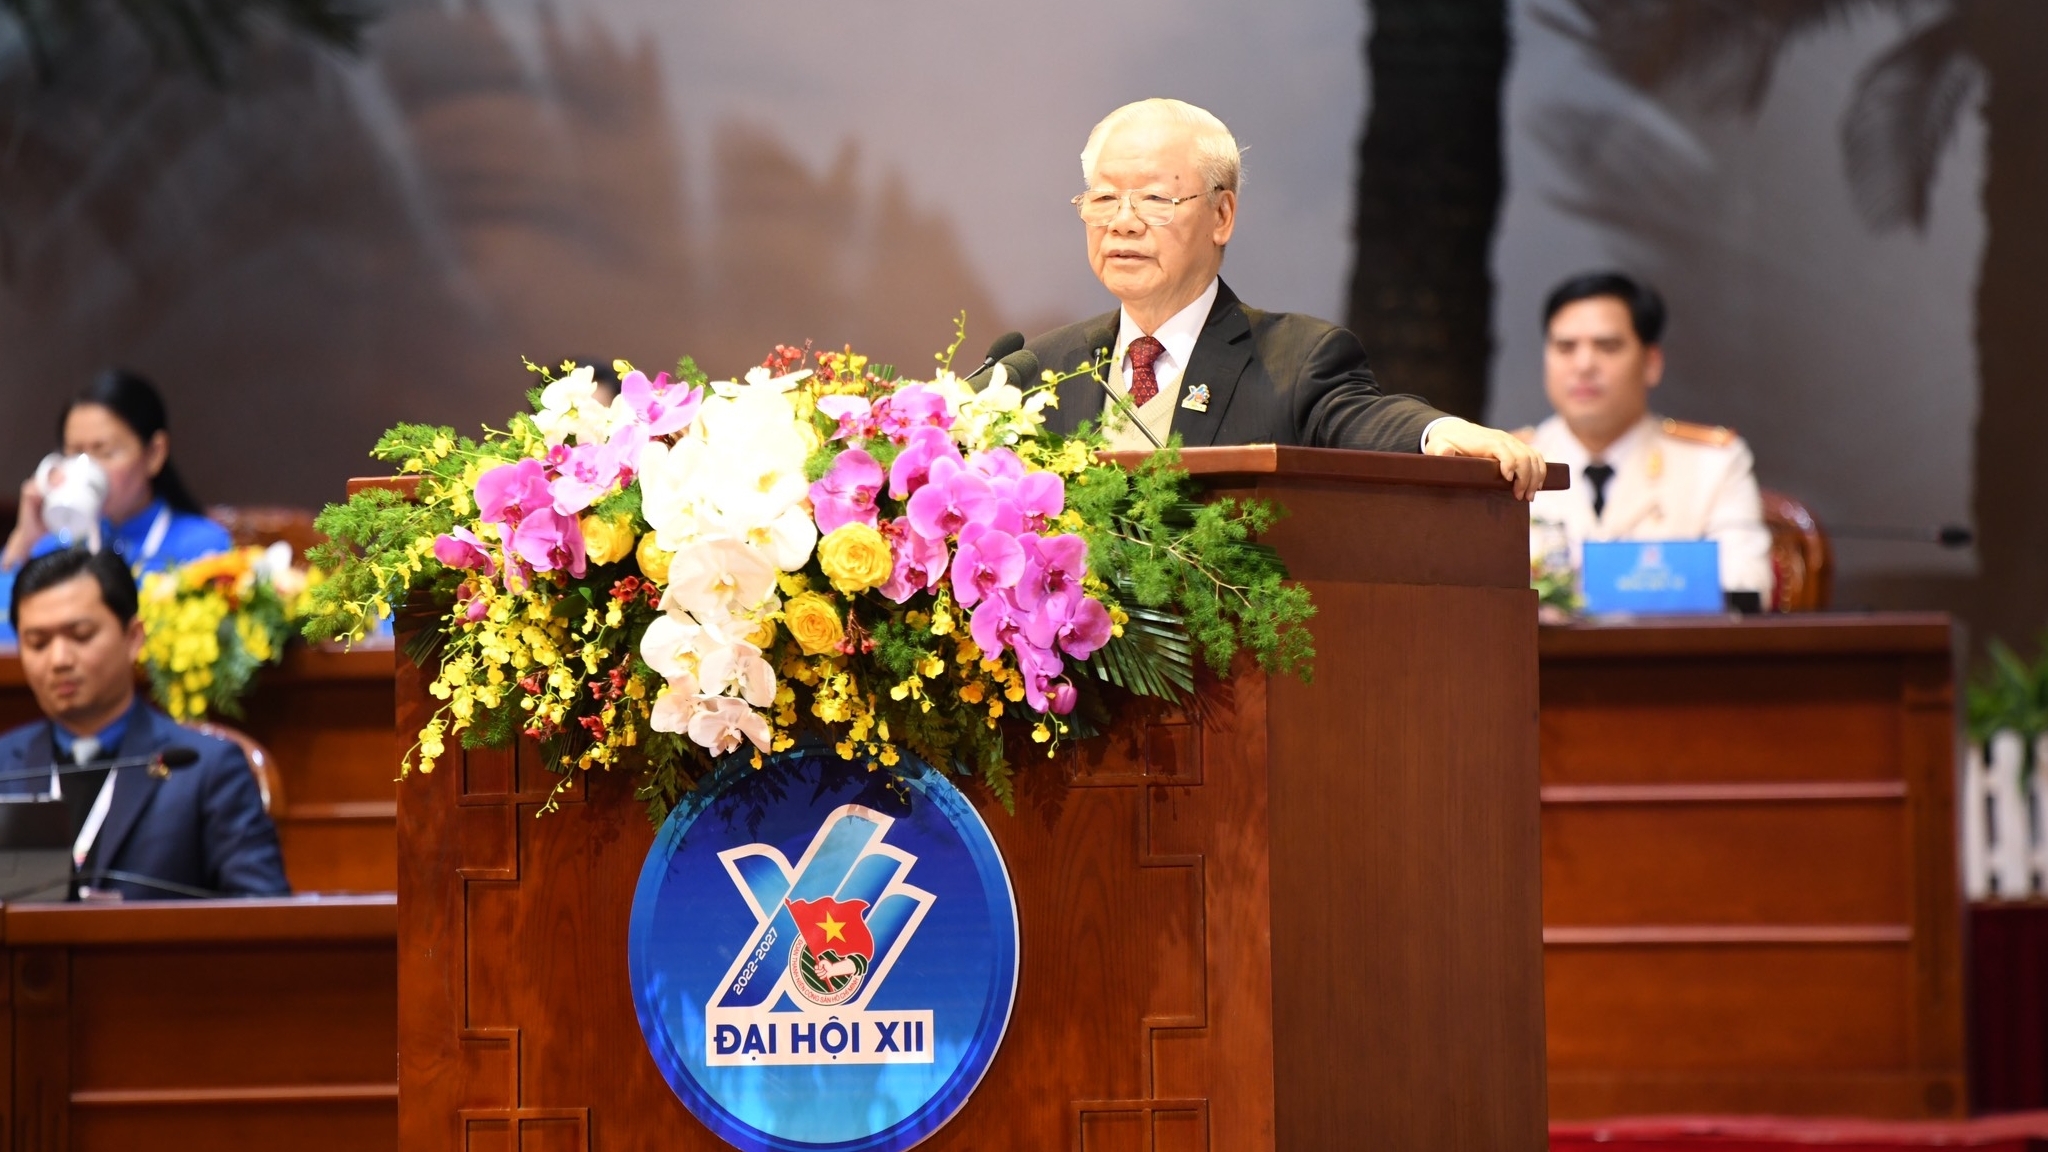 Генеральный секретарь ЦК КПВ принял участие в XII съезде ВКСМ им. Хо Ши Мина